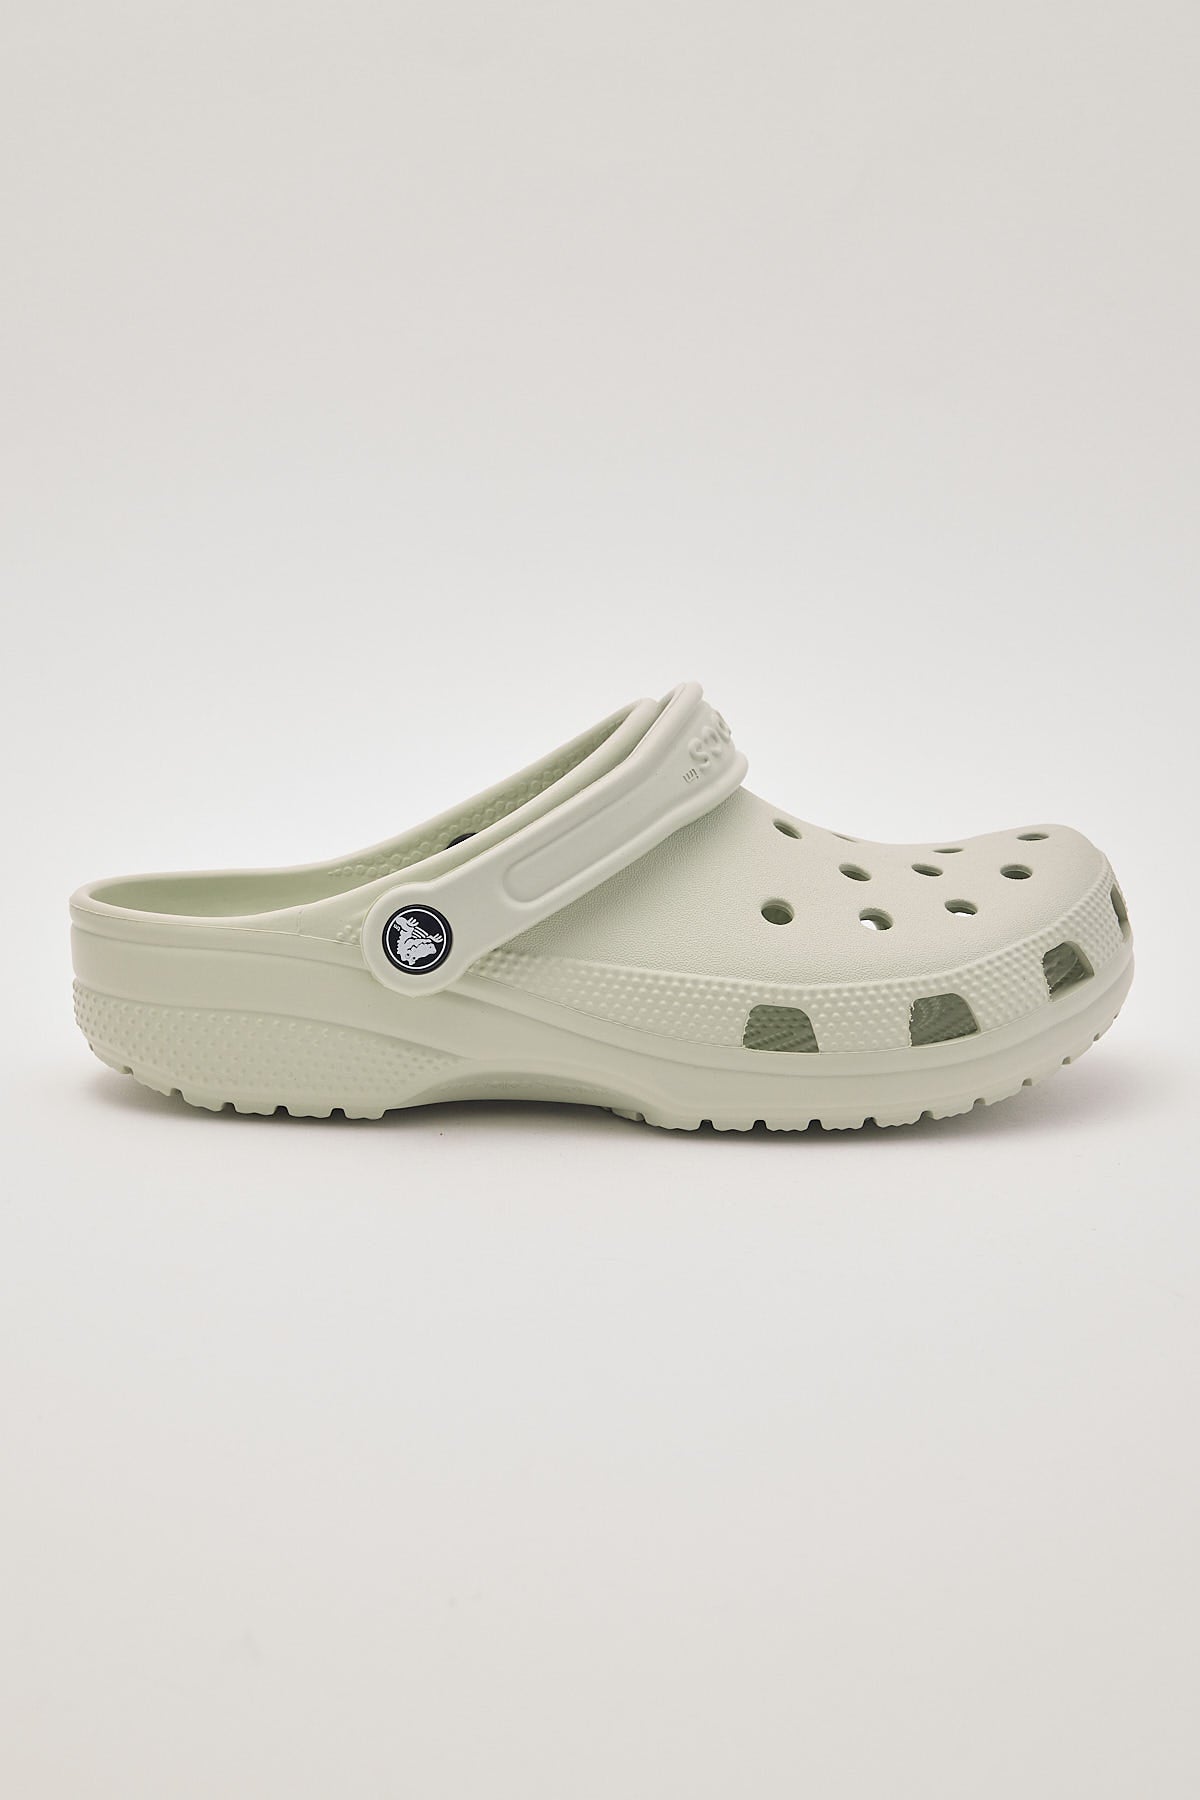 Crocs Classic Clog Plaster